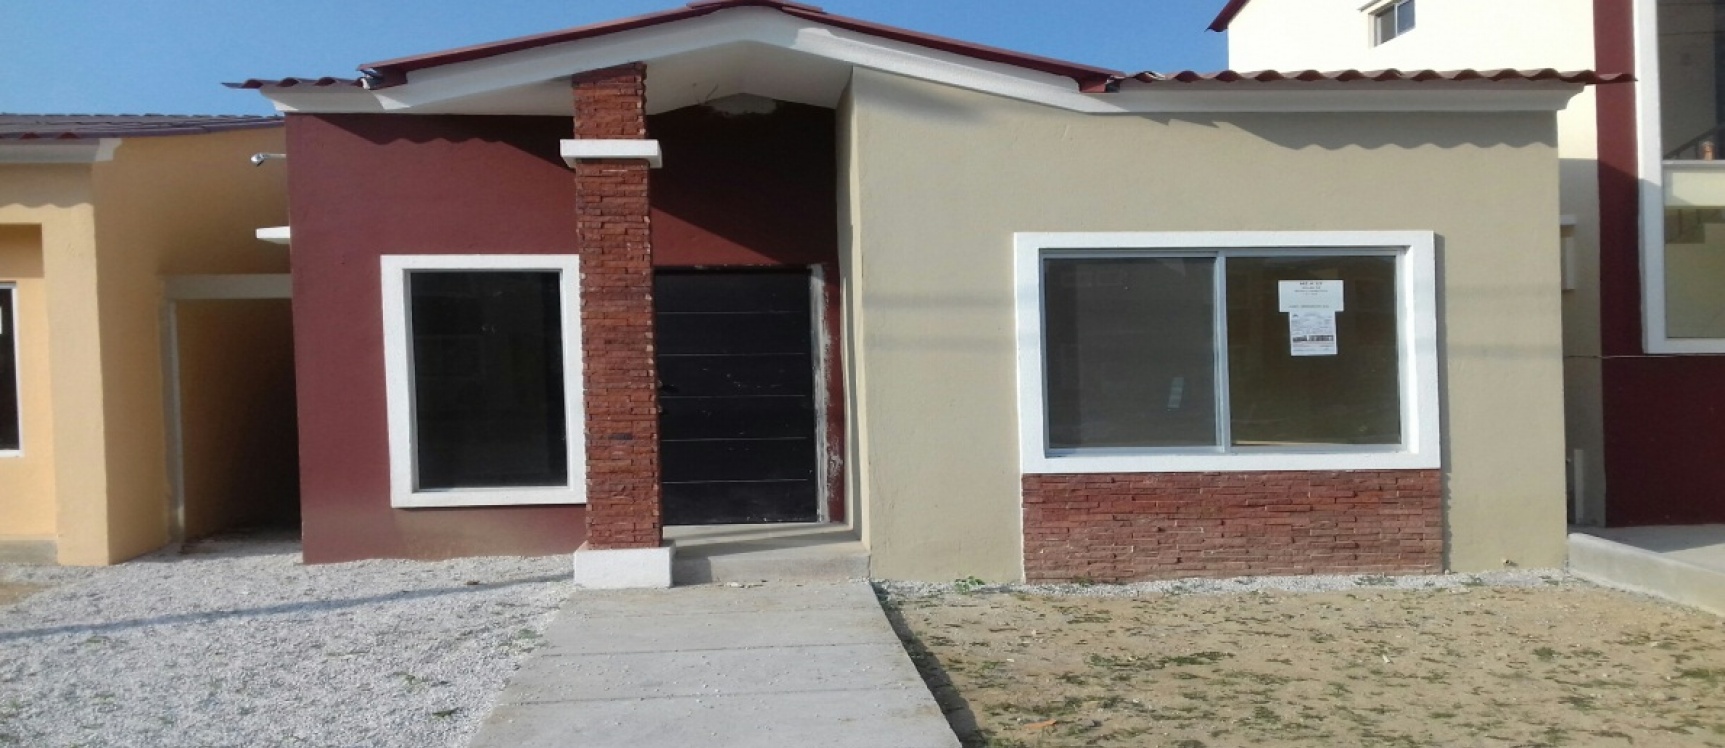 GeoBienes - Casa de 1 planta en venta en Villa Italia, Etapa Bari - Plusvalia Guayaquil Casas de venta y alquiler Inmobiliaria Ecuador